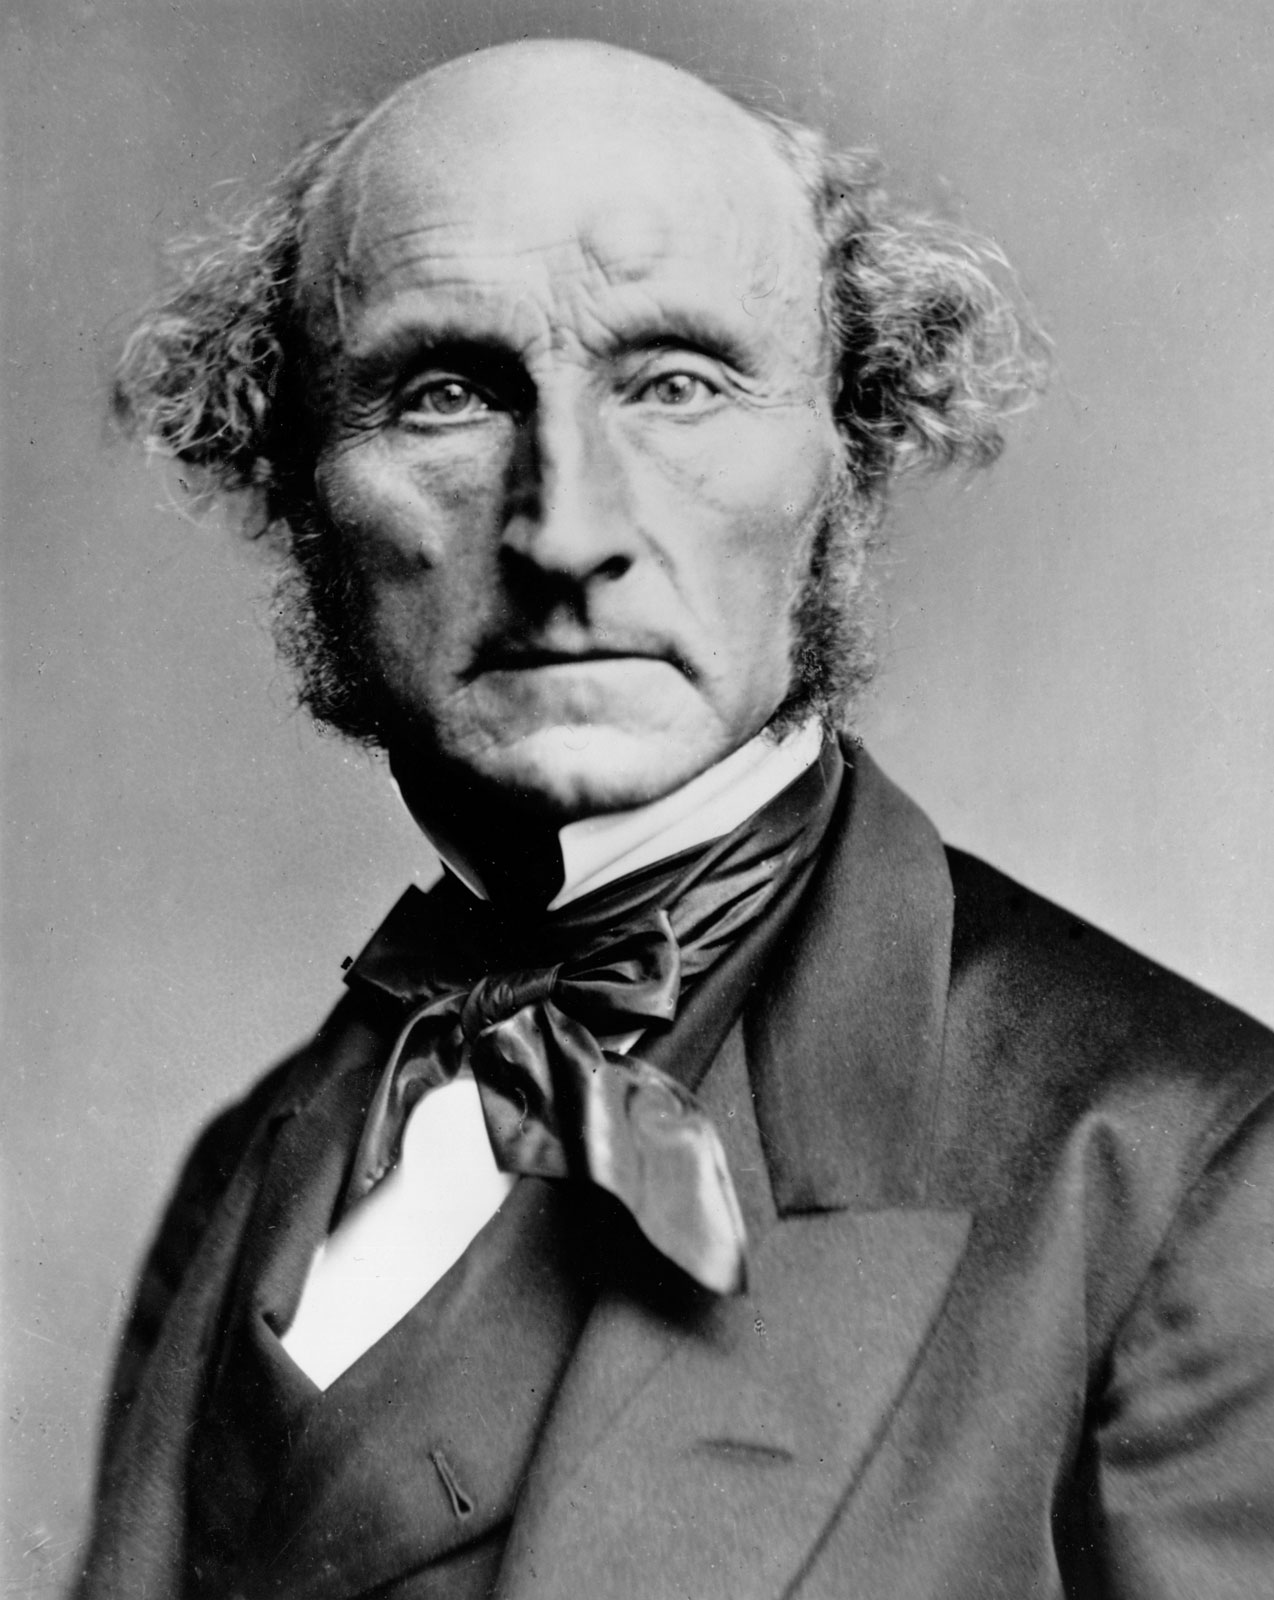 Photograph of John Stuart Mill c. 1870